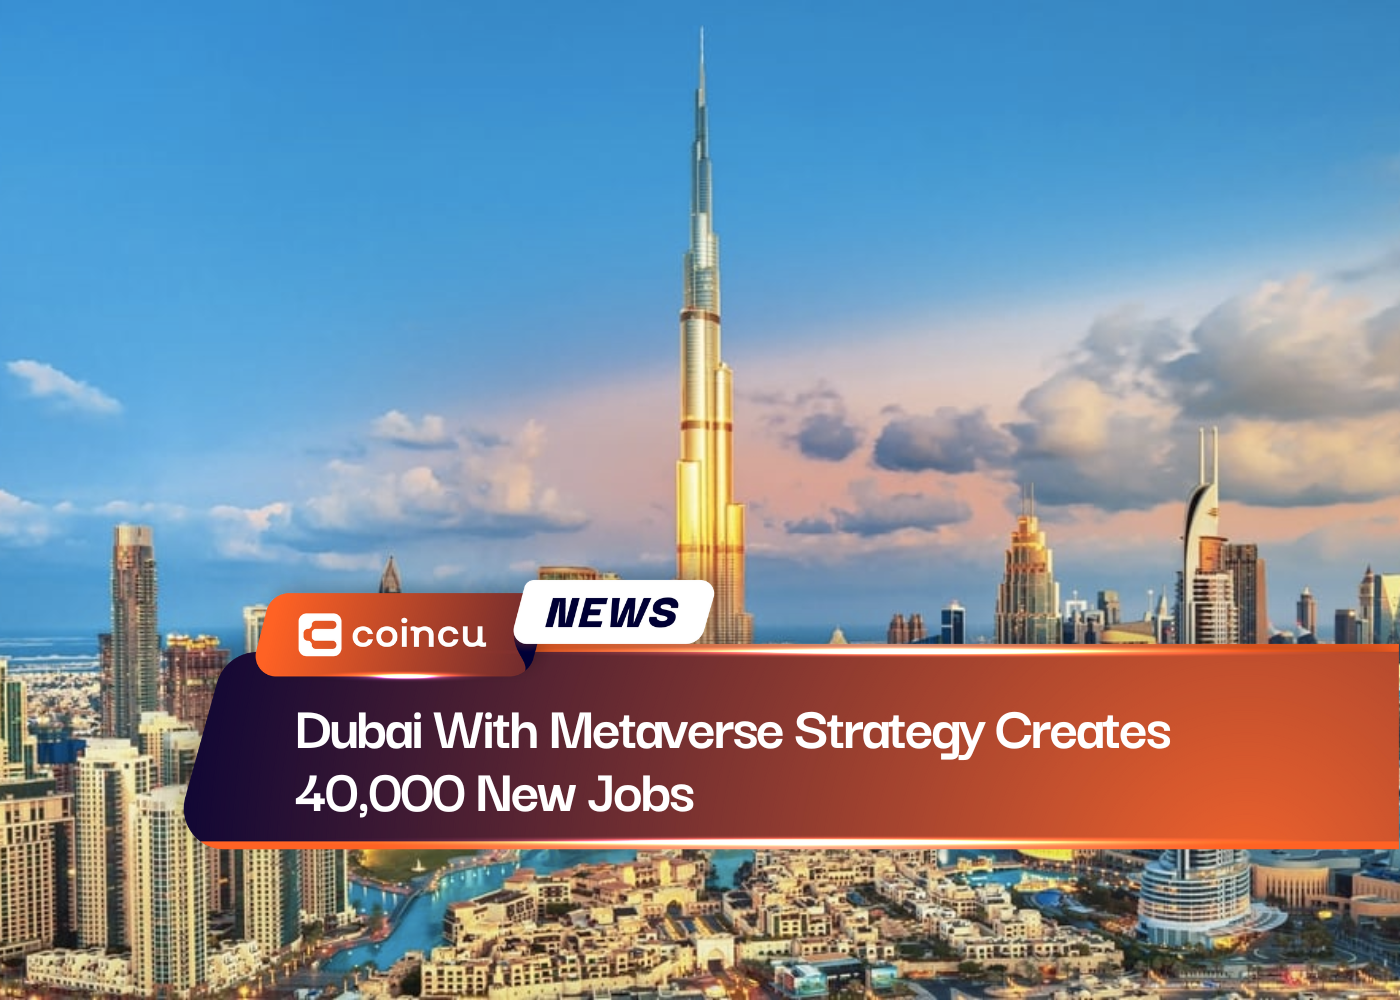 Dubai With Metaverse Strategy Creates 40,000 New Jobs